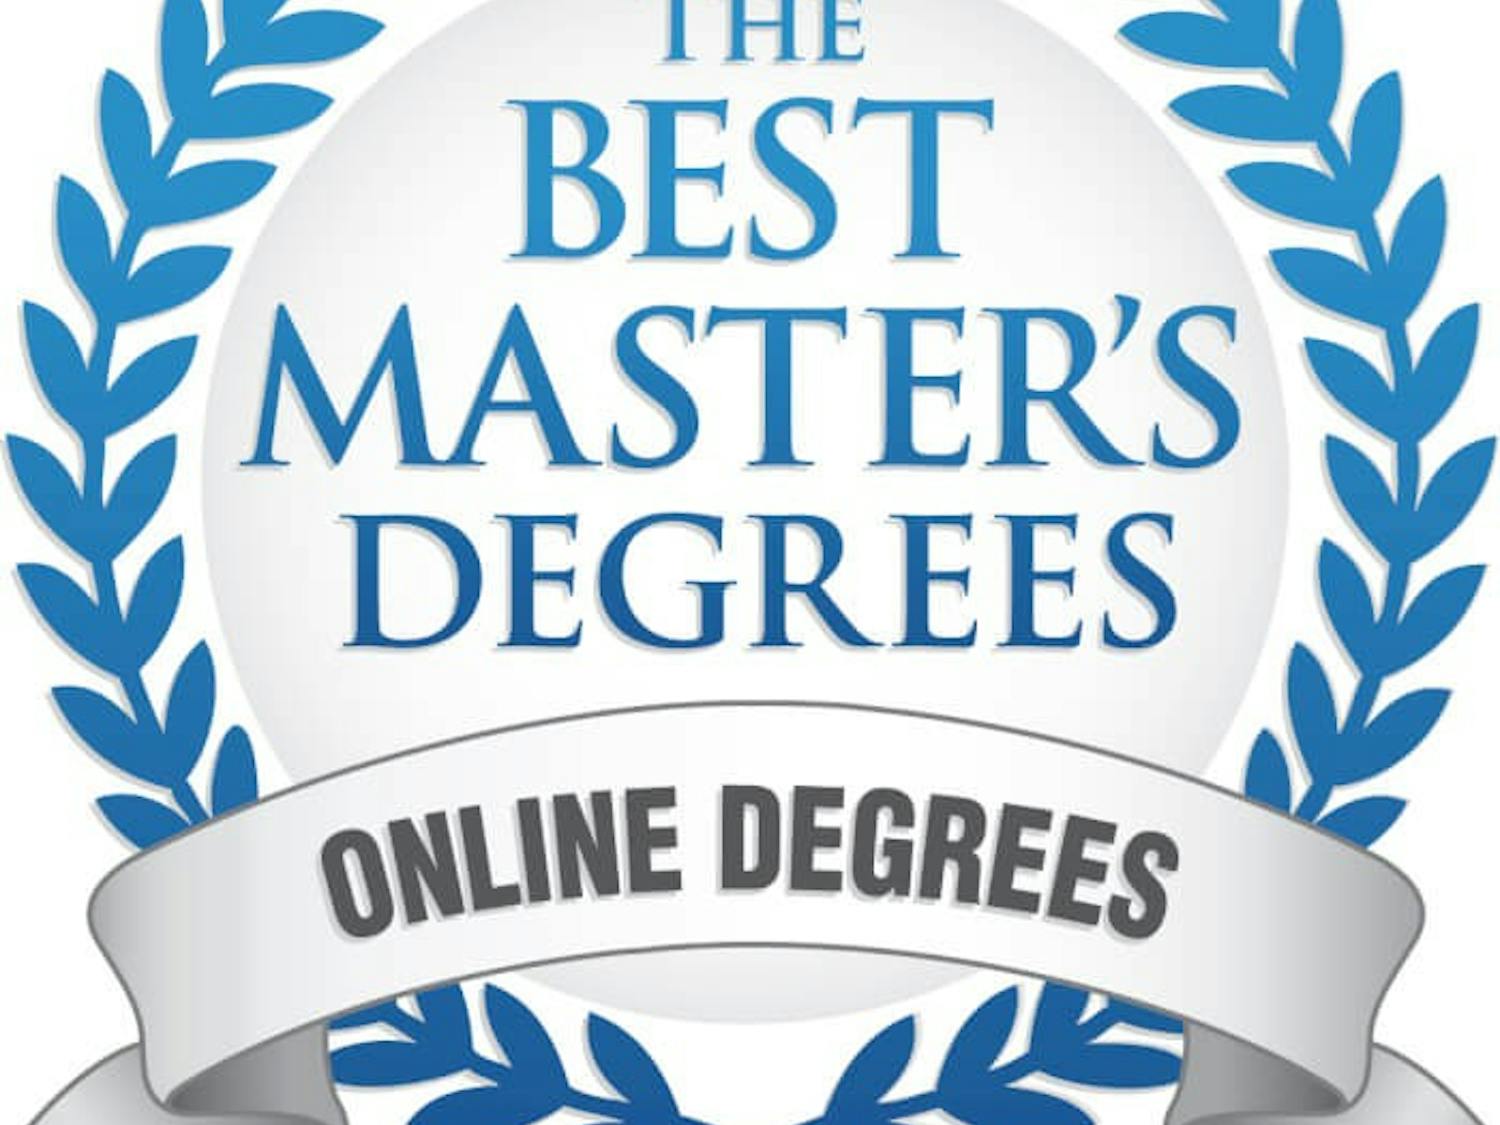 Badge for The Best Master's Degrees for Online Degrees. 